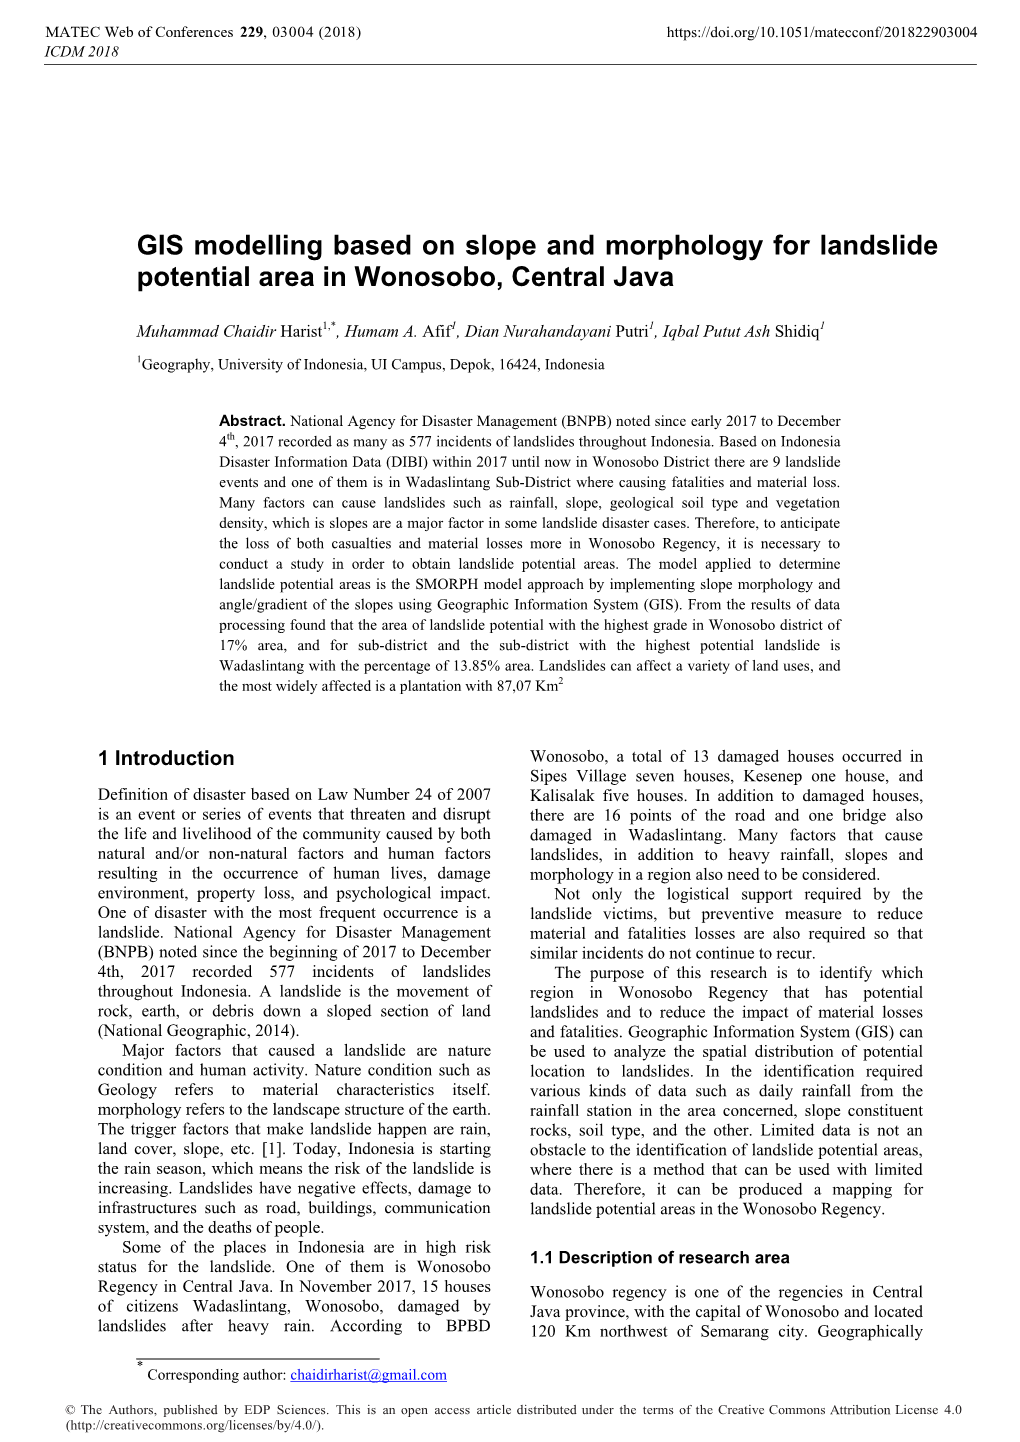 GIS Modelling Based on Slope and Morphology for Landslide Potential Area in Wonosobo, Central Java